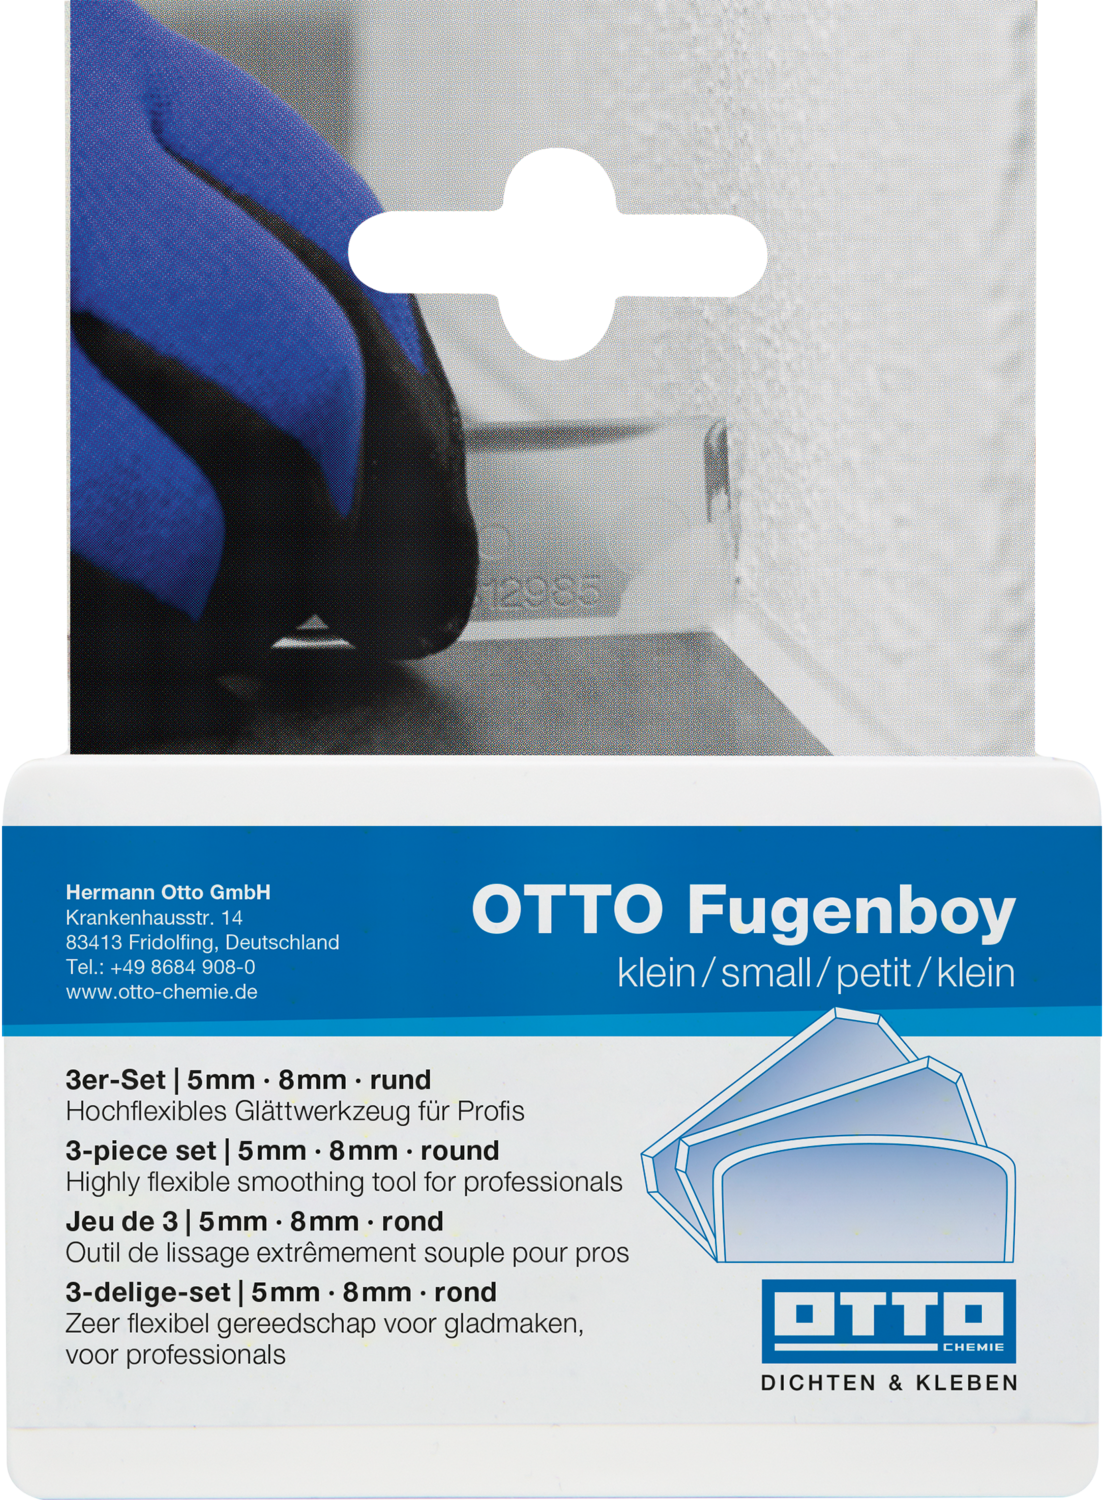 OTTO Fugenboy klein - Das Glättwerkzeug-Set